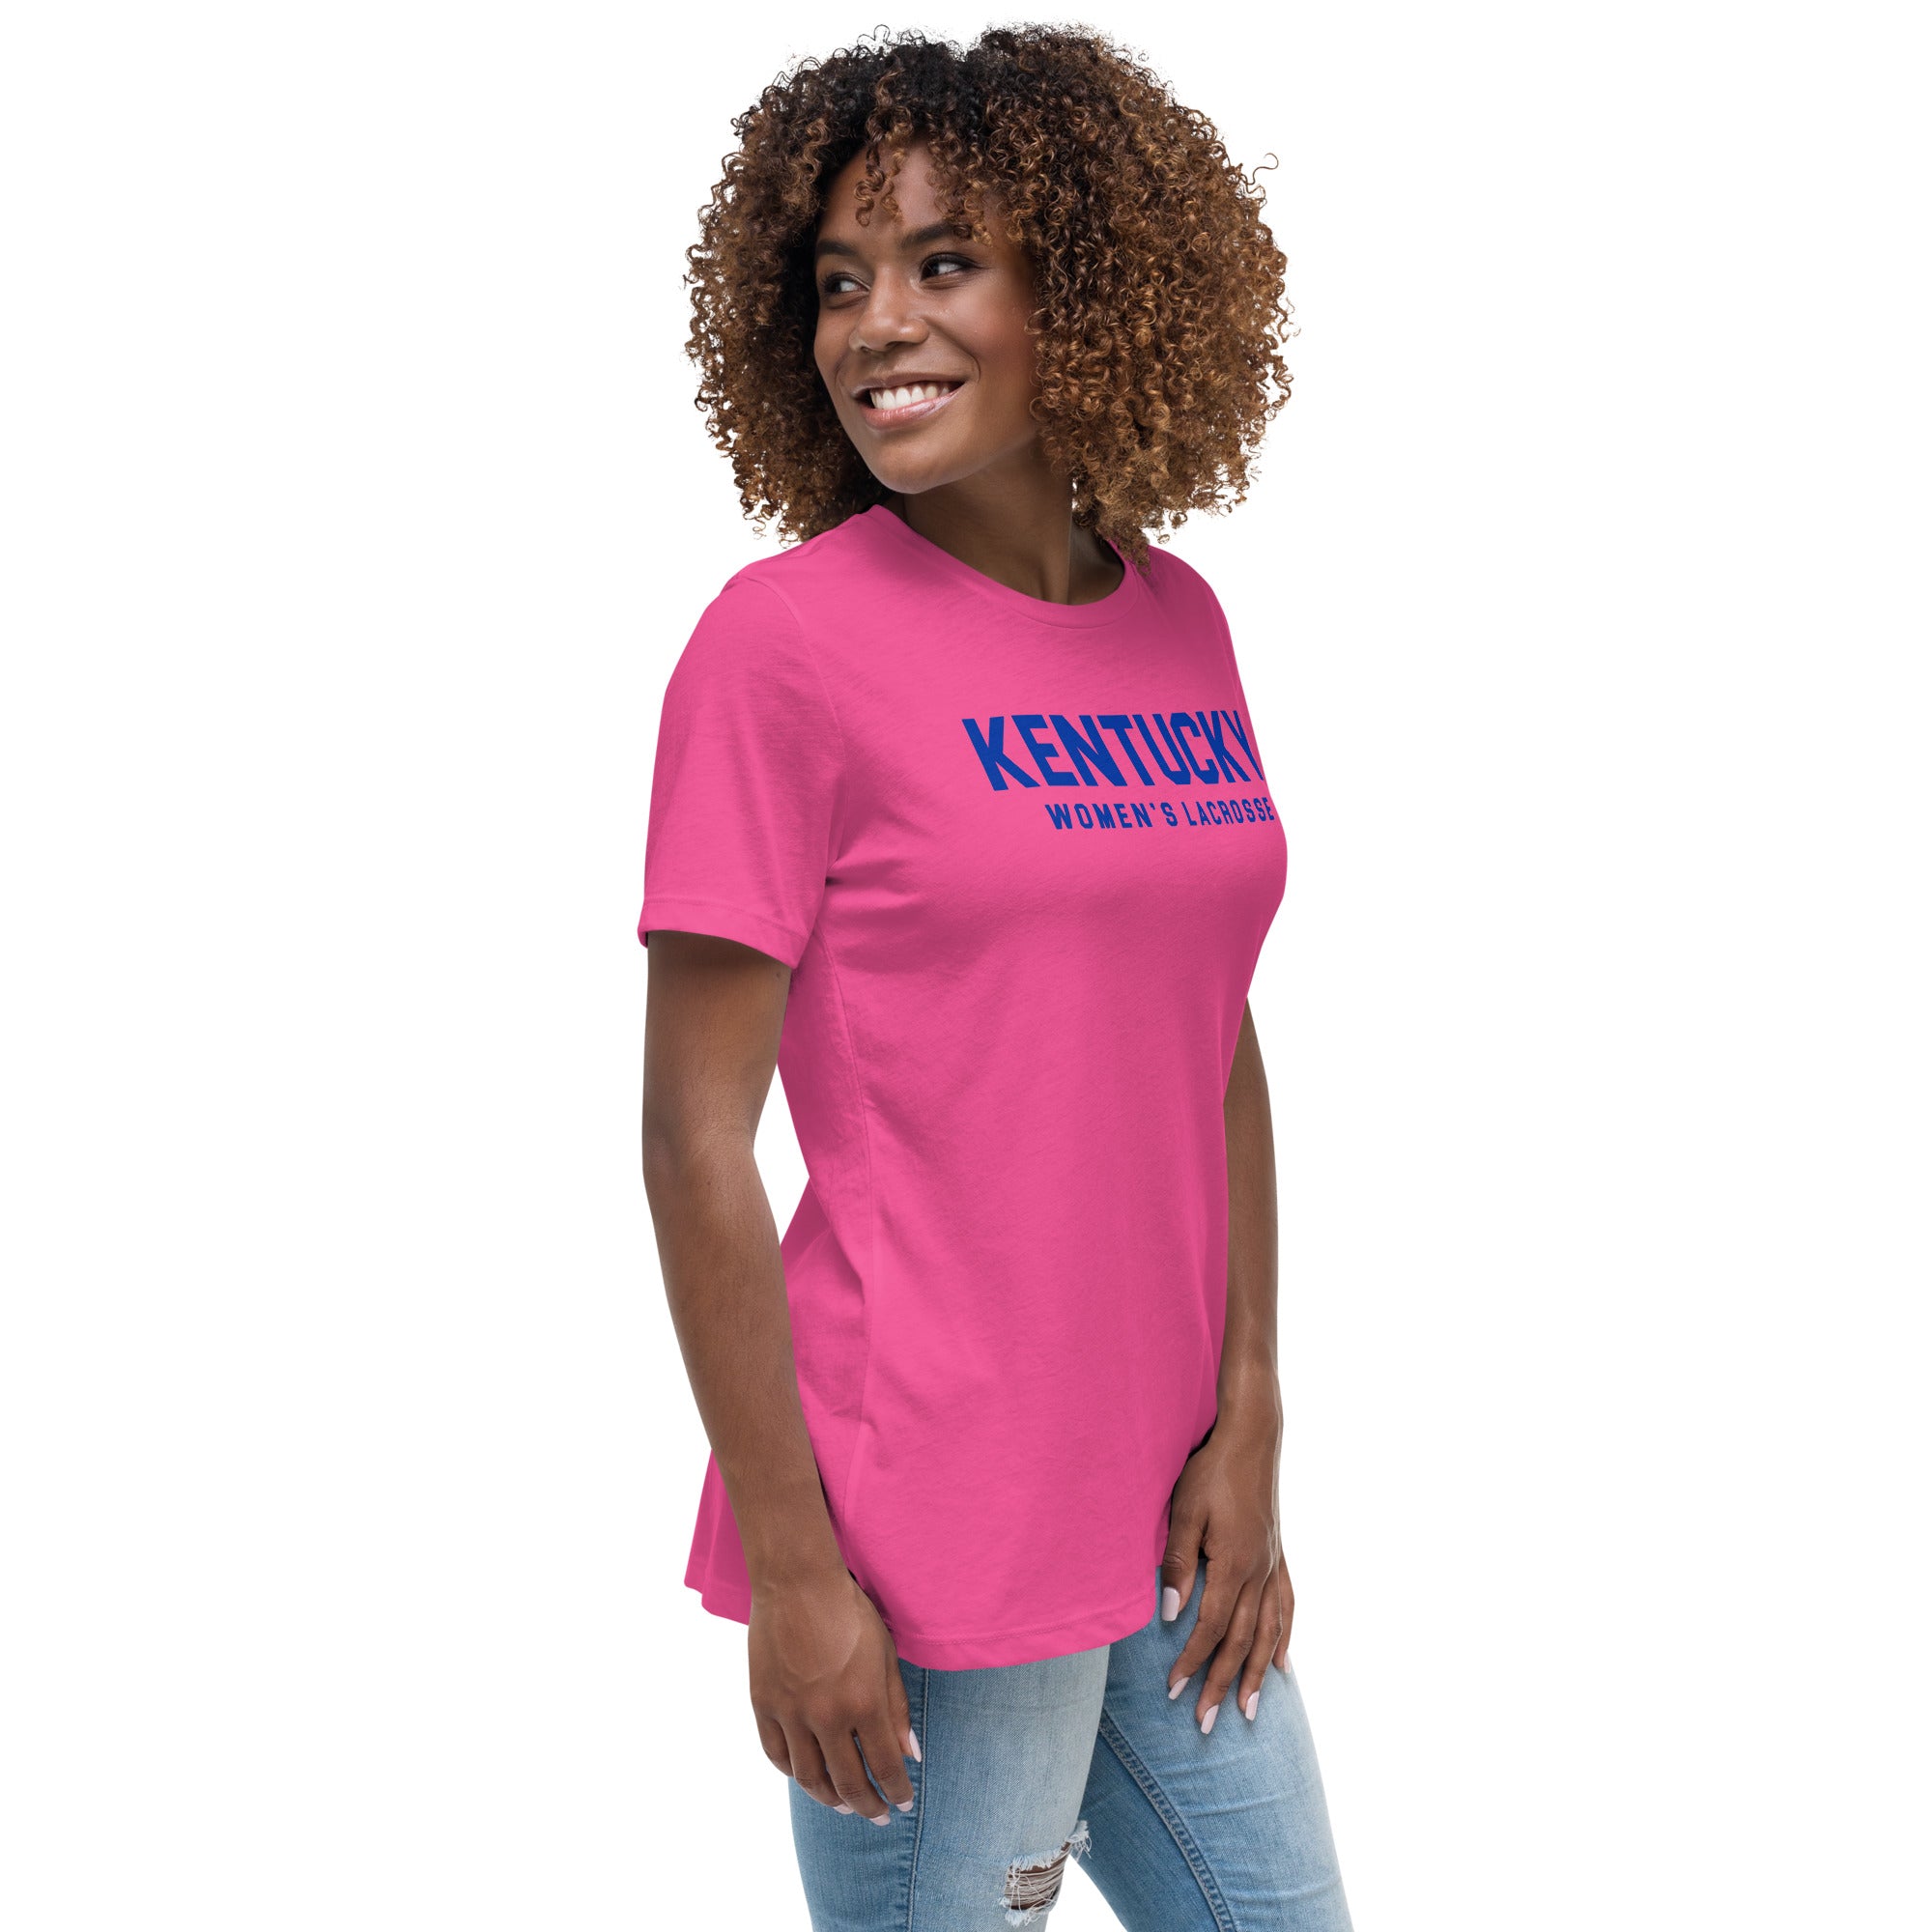 Kentucky Women's Relaxed T-Shirt